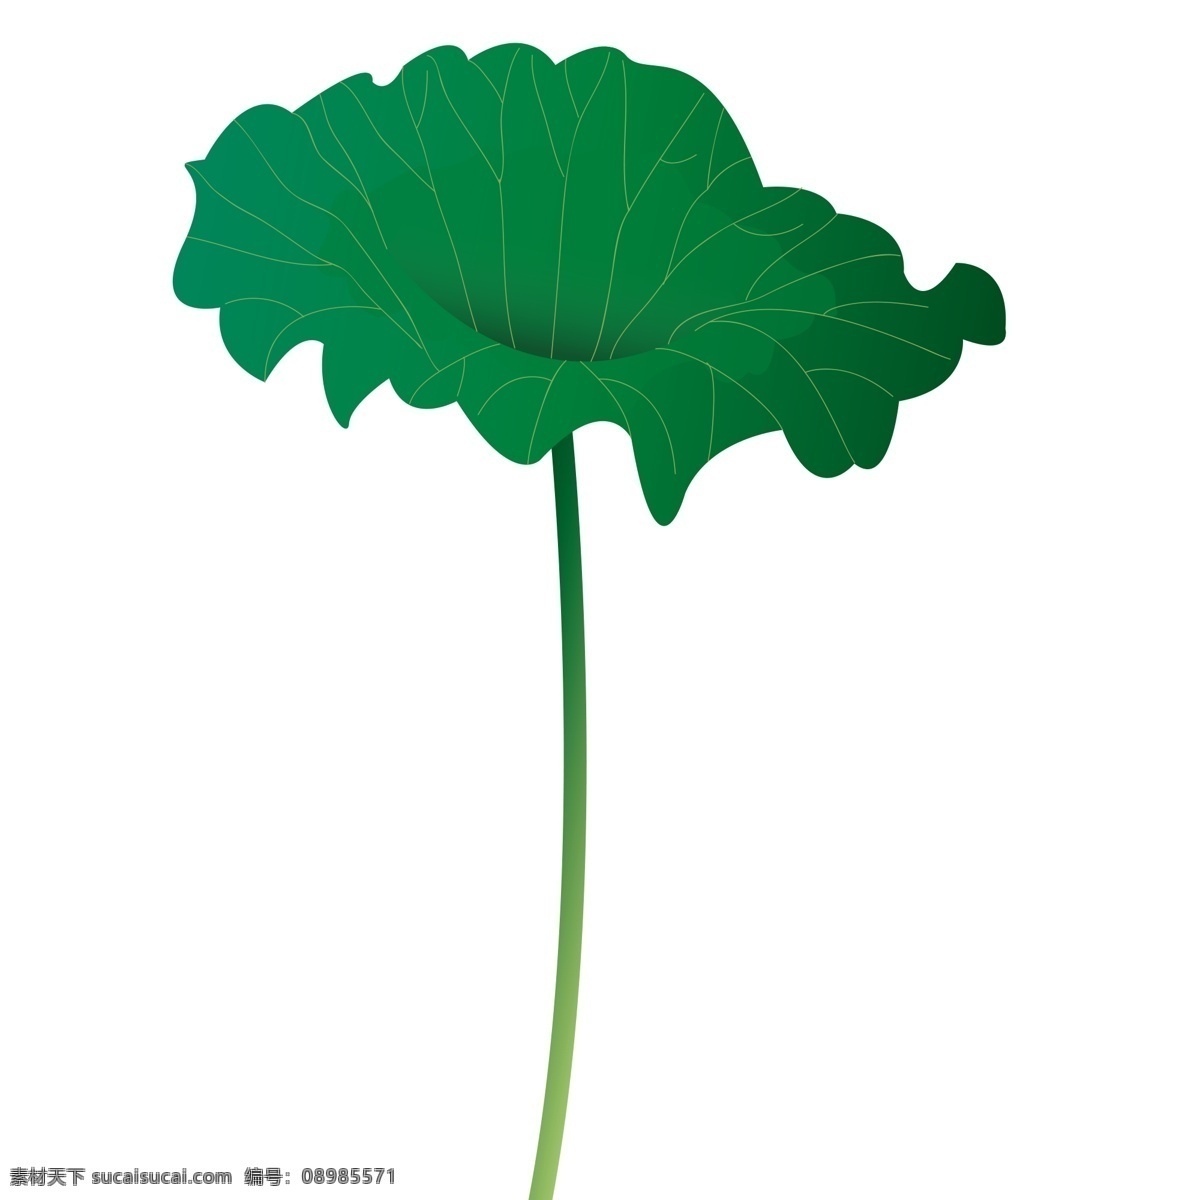 自然 绿色 荷叶 装饰 元素 装饰元素 荷花 植物 手绘 荷塘 树叶 简约